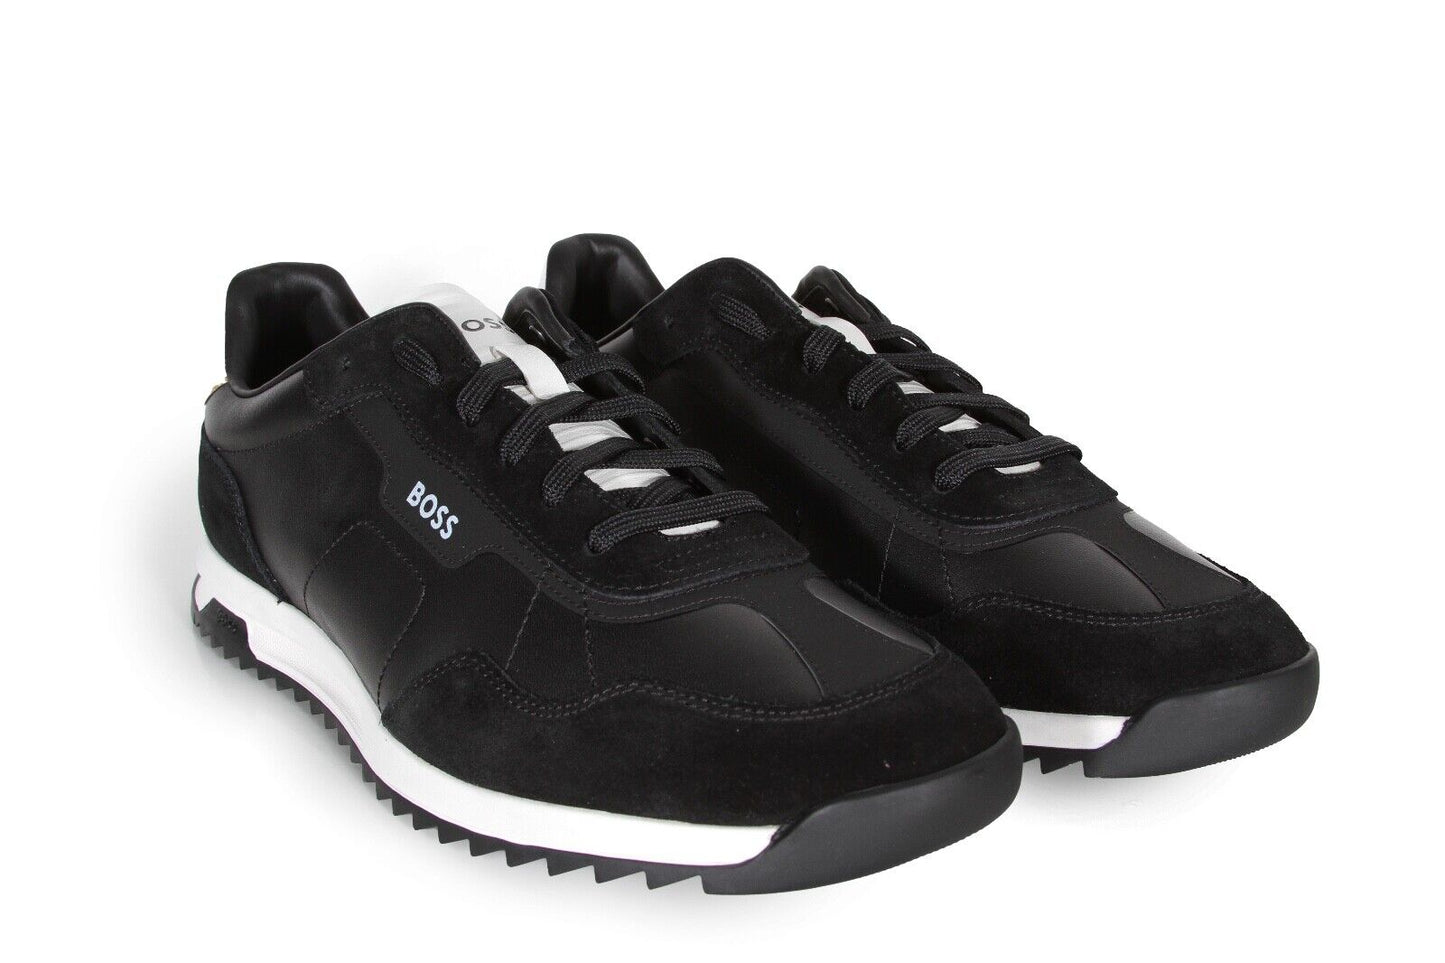 HUGO BOSS Zayn_Lowp_ltsd Men’s Sneakers in Black 50504036-001